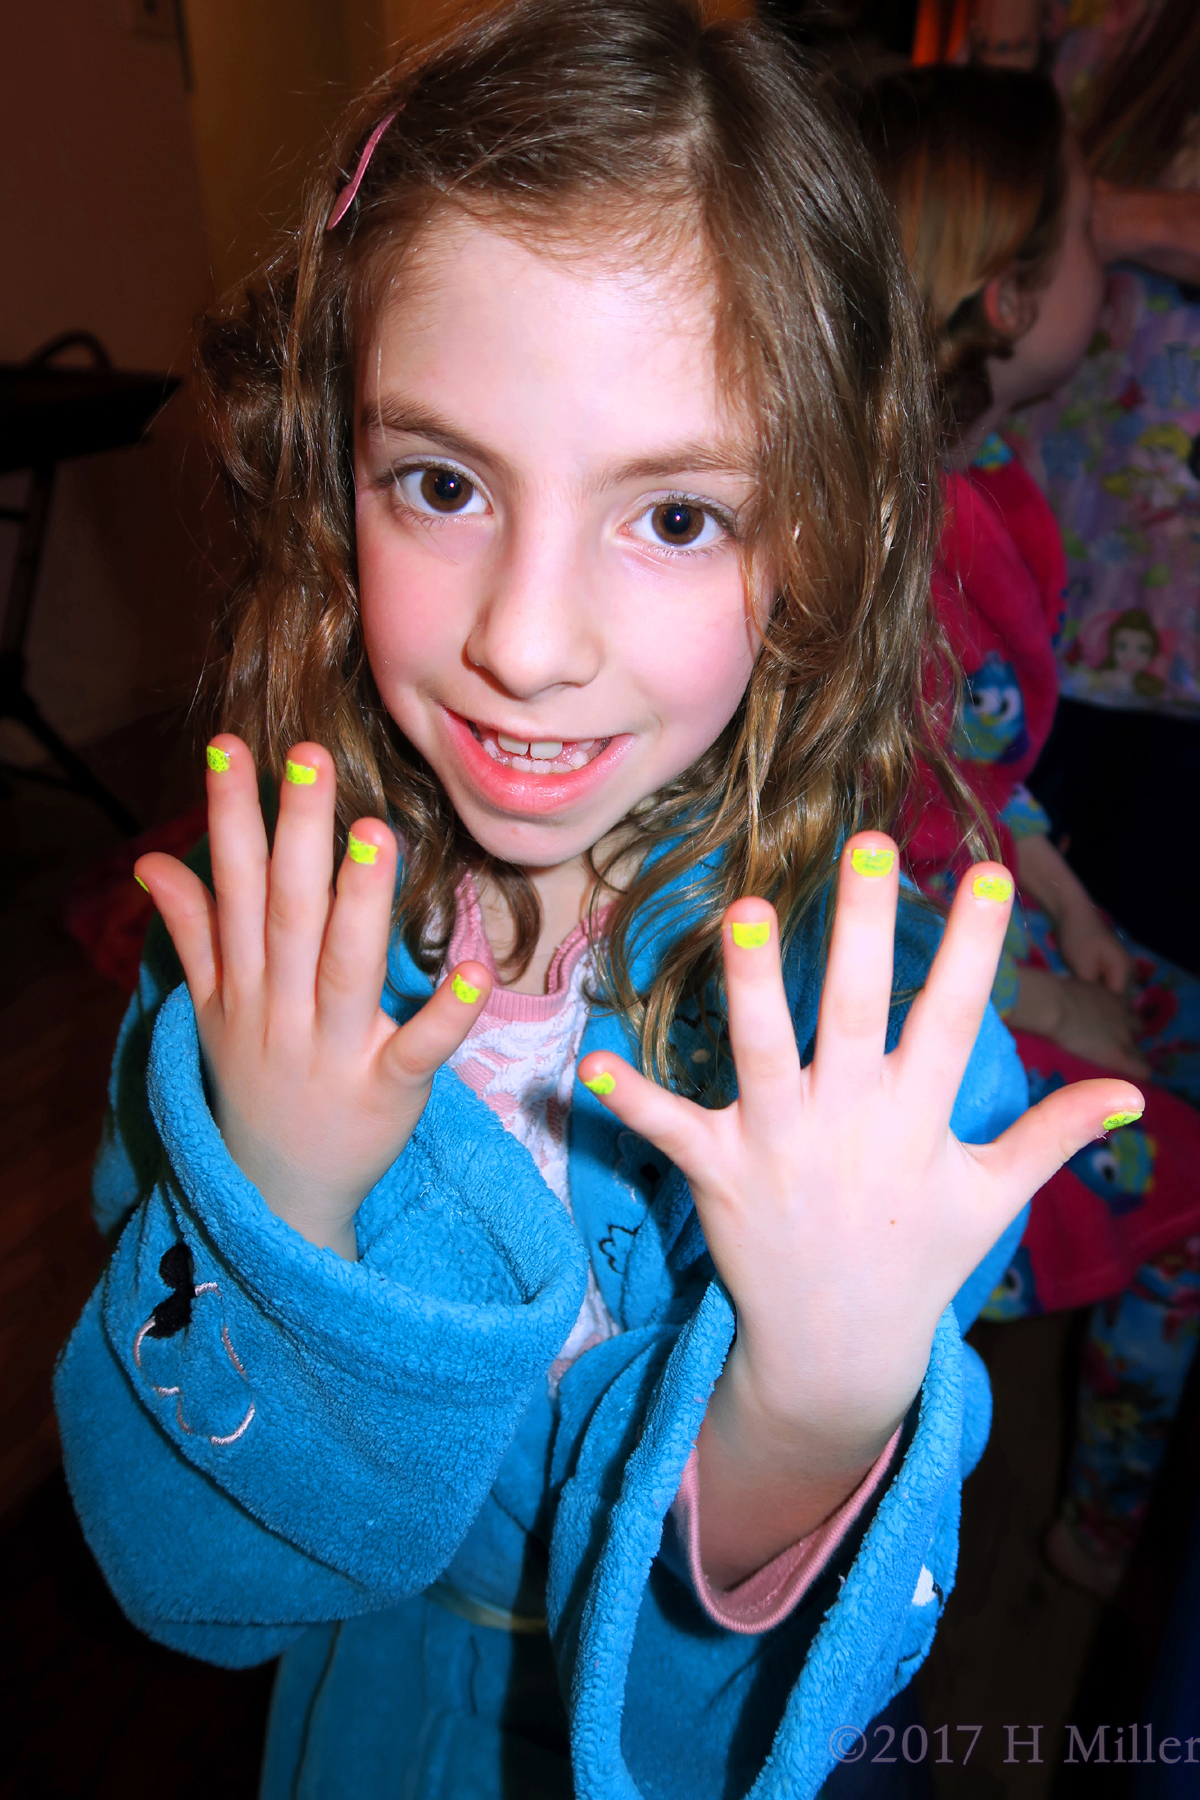 Showing Her Beautiful Yellow Girls Manicure! 